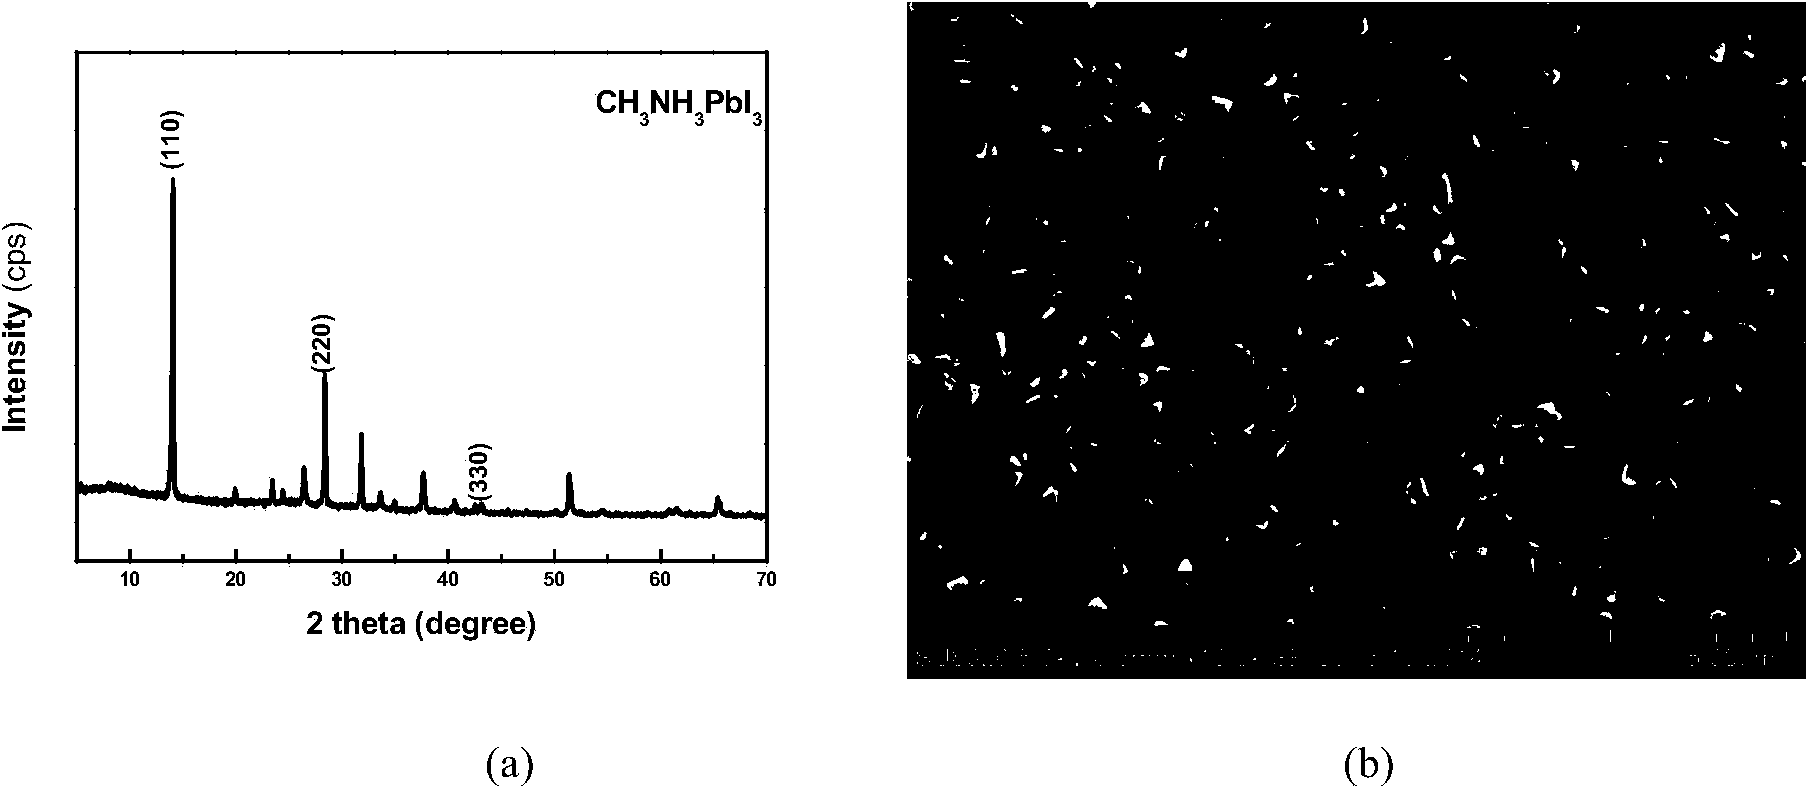 Chemical vapor deposition preparation method for perovskite solar cell